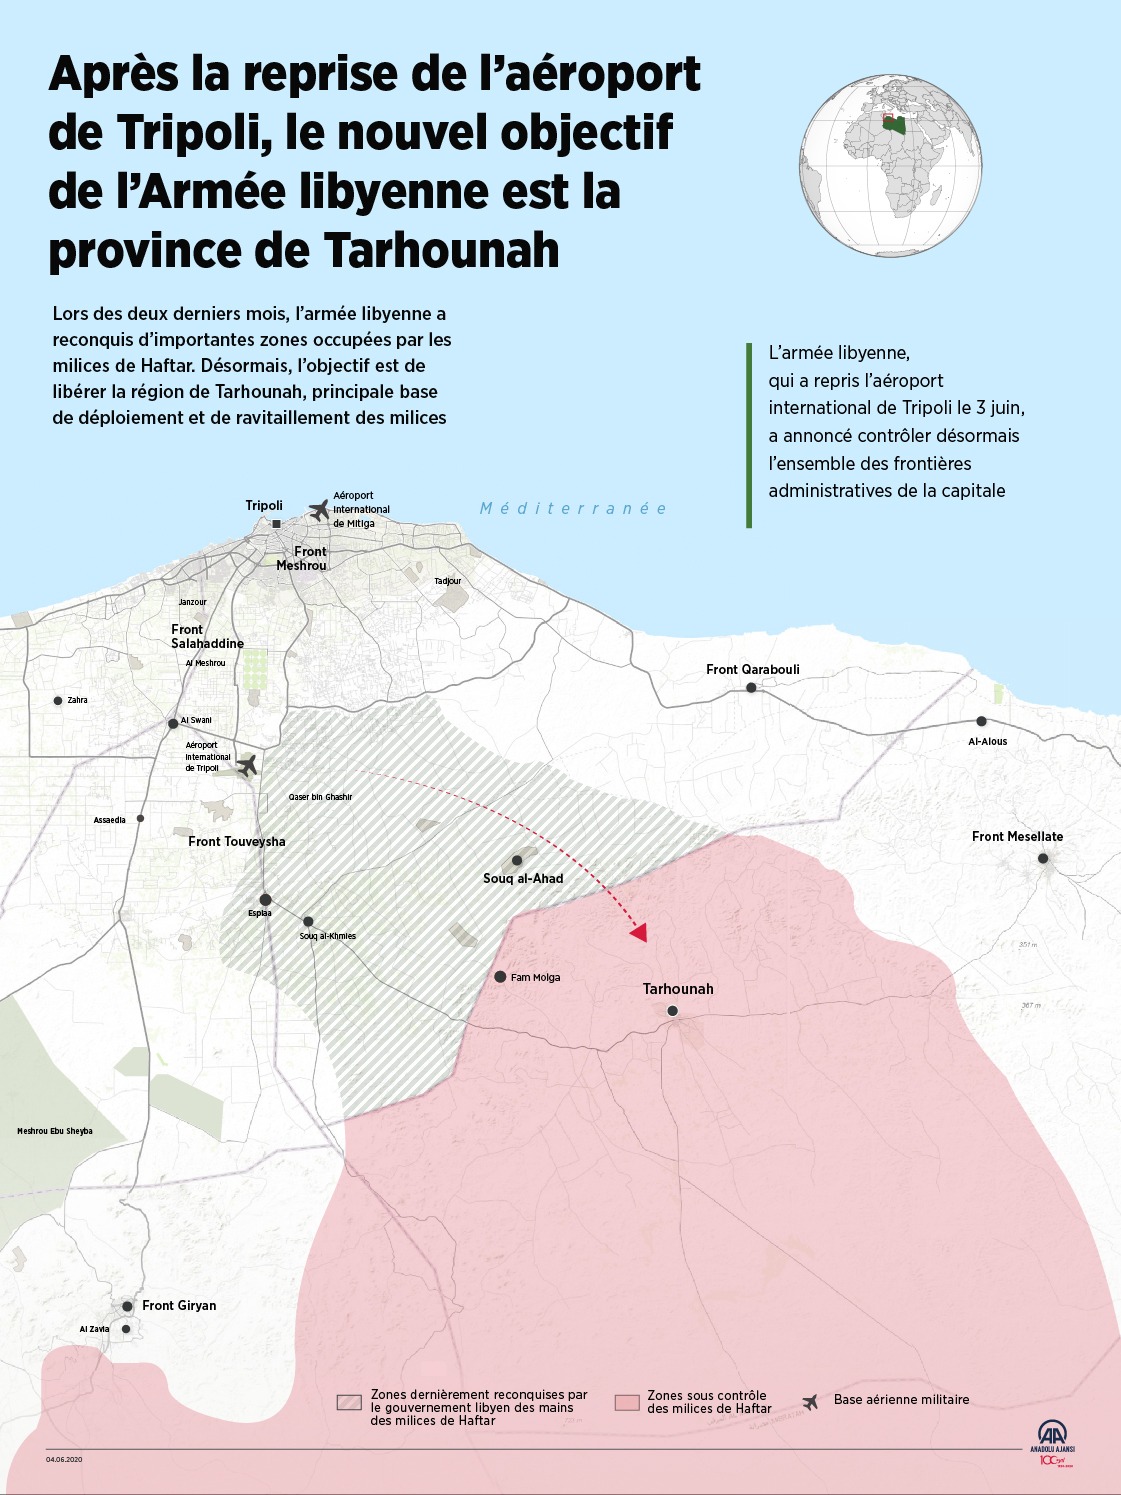 L’armée libyenne assiège Tarhouna et la milice de Haftar a quitté la ville